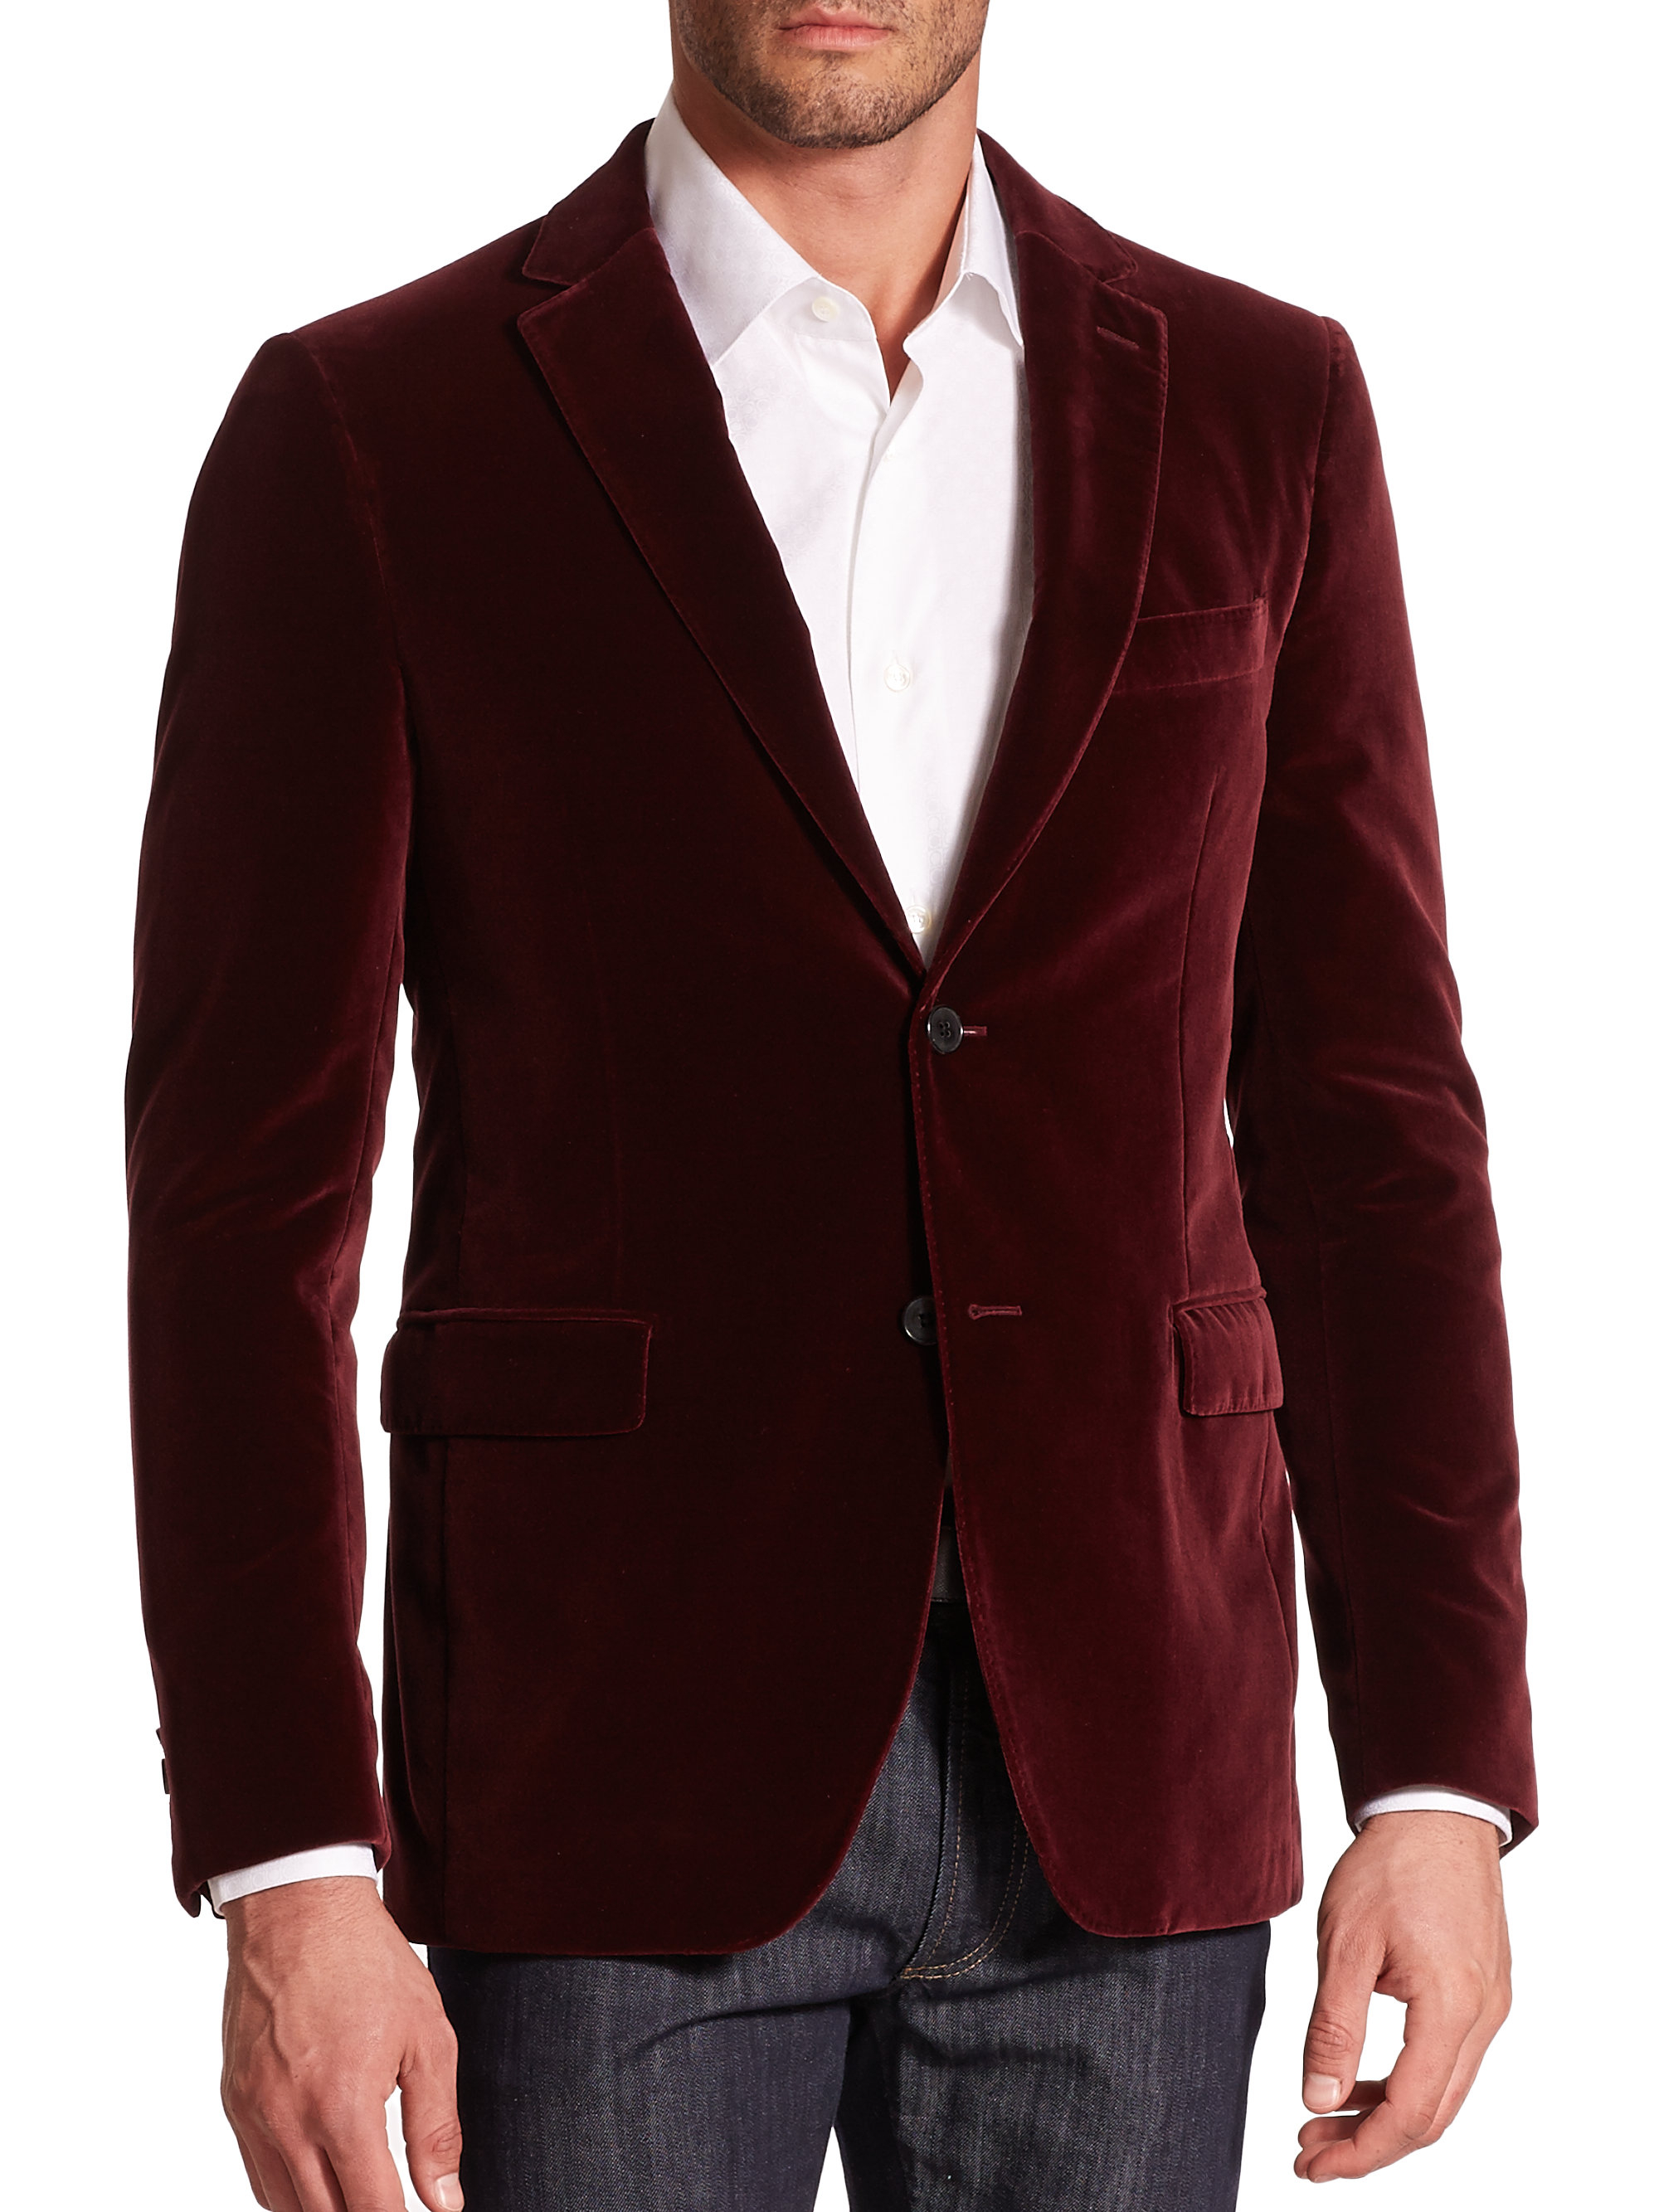 Ferragamo Cotton Velvet Blazer in Burgundy (Purple) for Men - Lyst